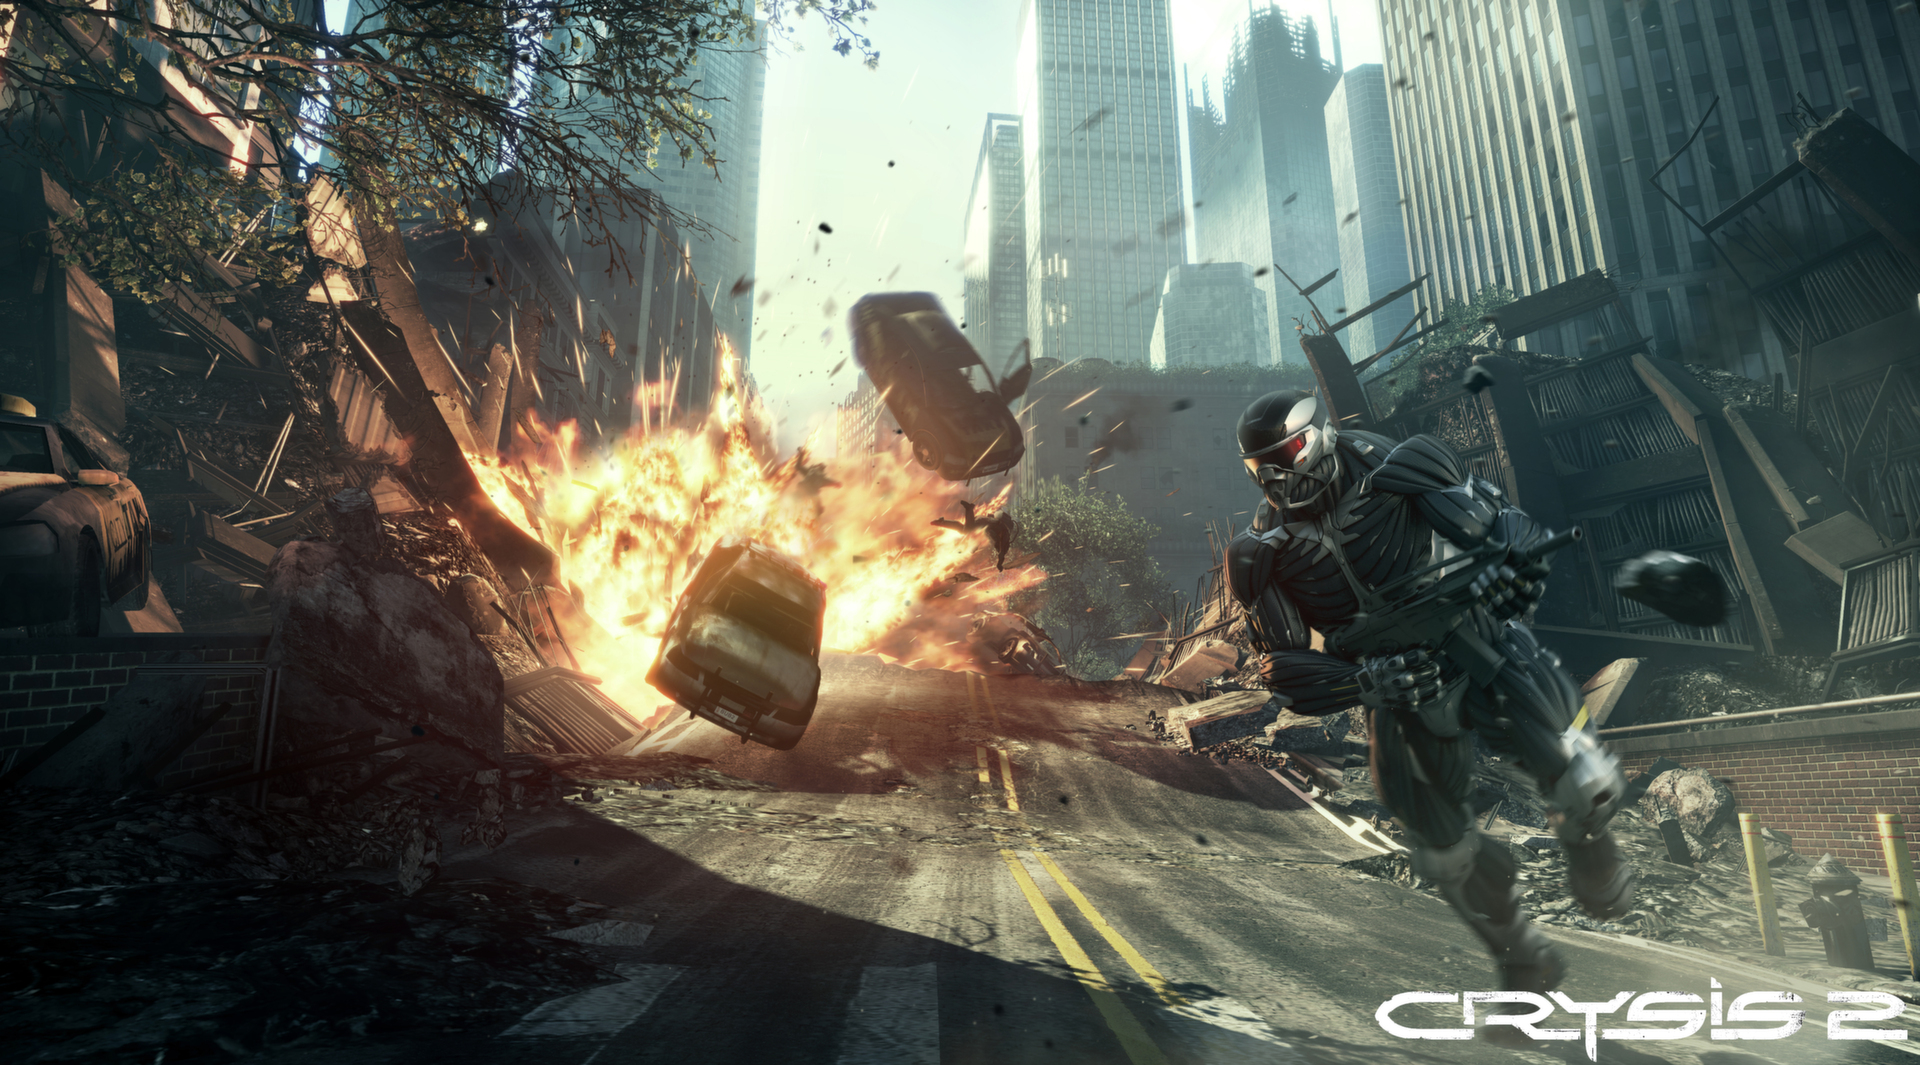 Crysis 2 - Maximum Edition trên Steam | Hình 2